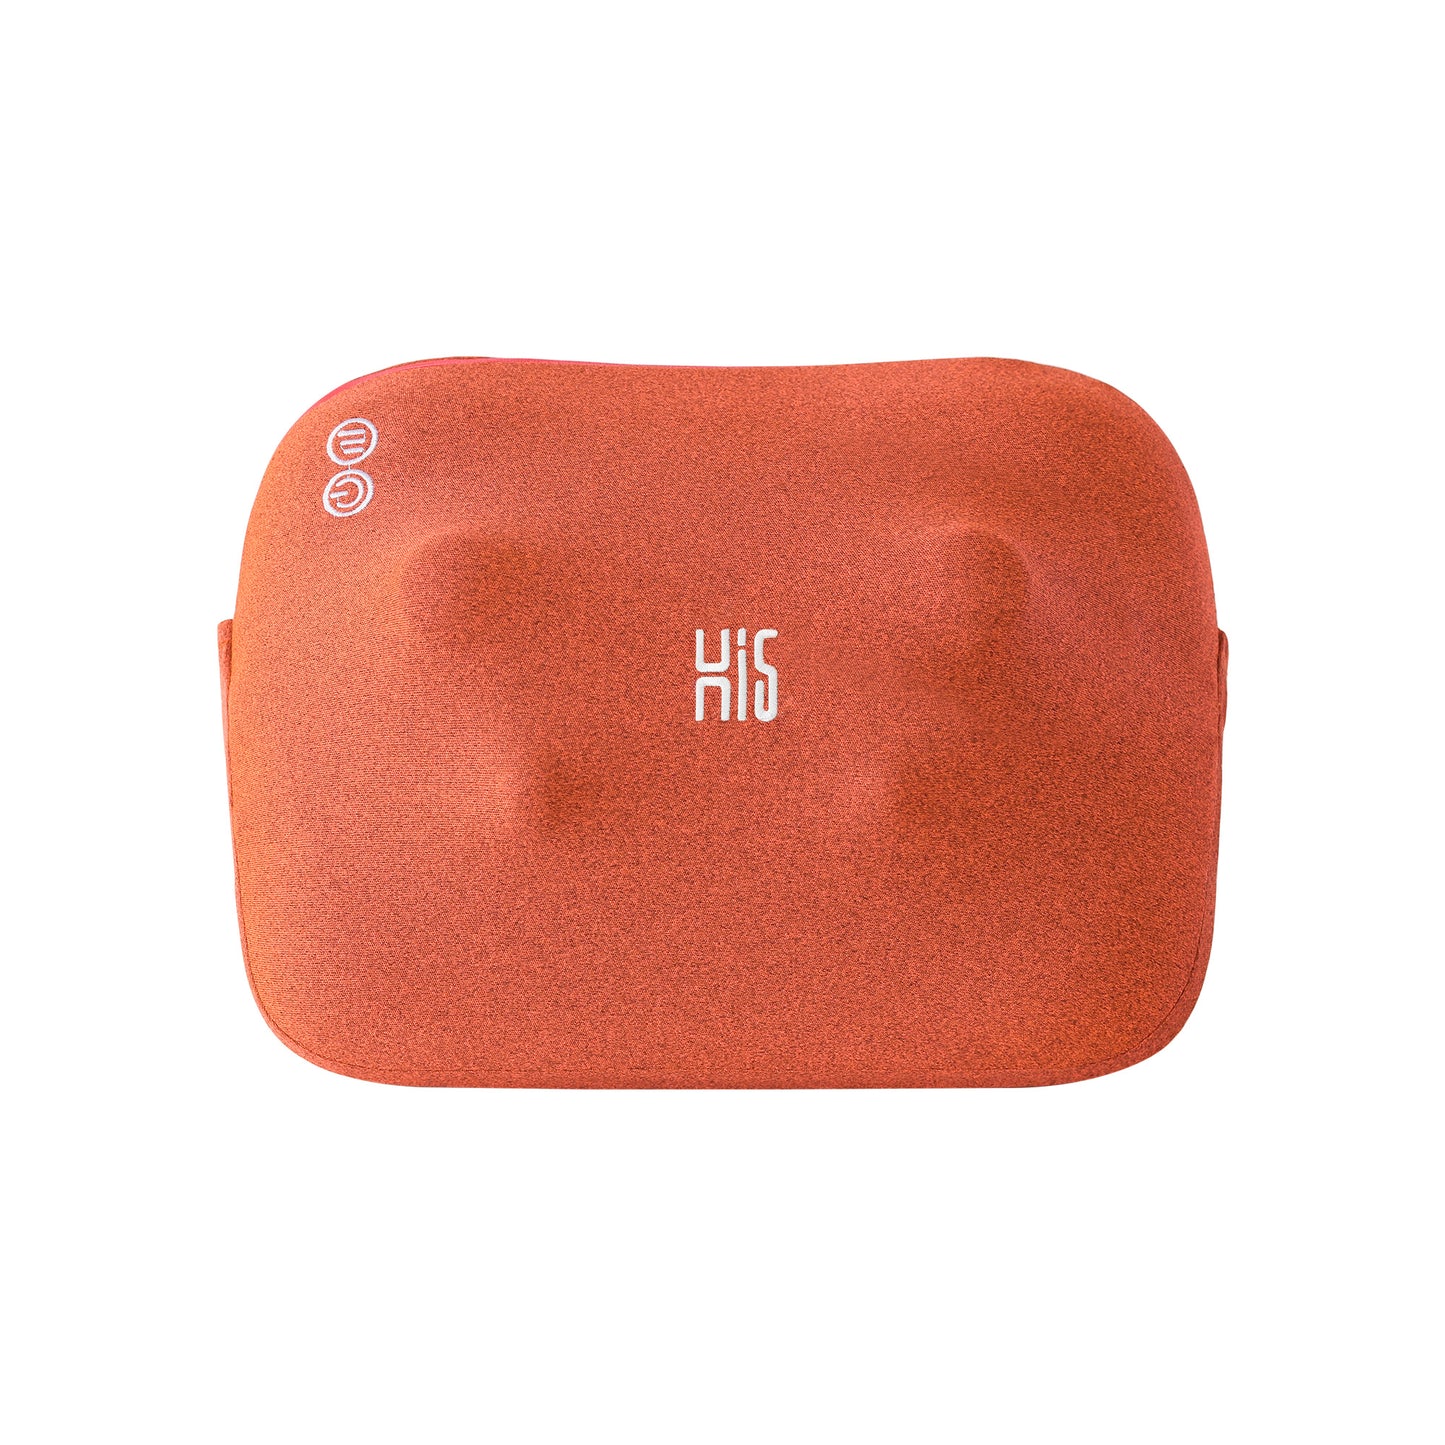 Hi5 Bravo Mini Shiatsu-Massagekissen mit Wärmefunktion, Abschaltautomatik, waschbarer Bezug für Schultern, Nacken, Rücken und Beine